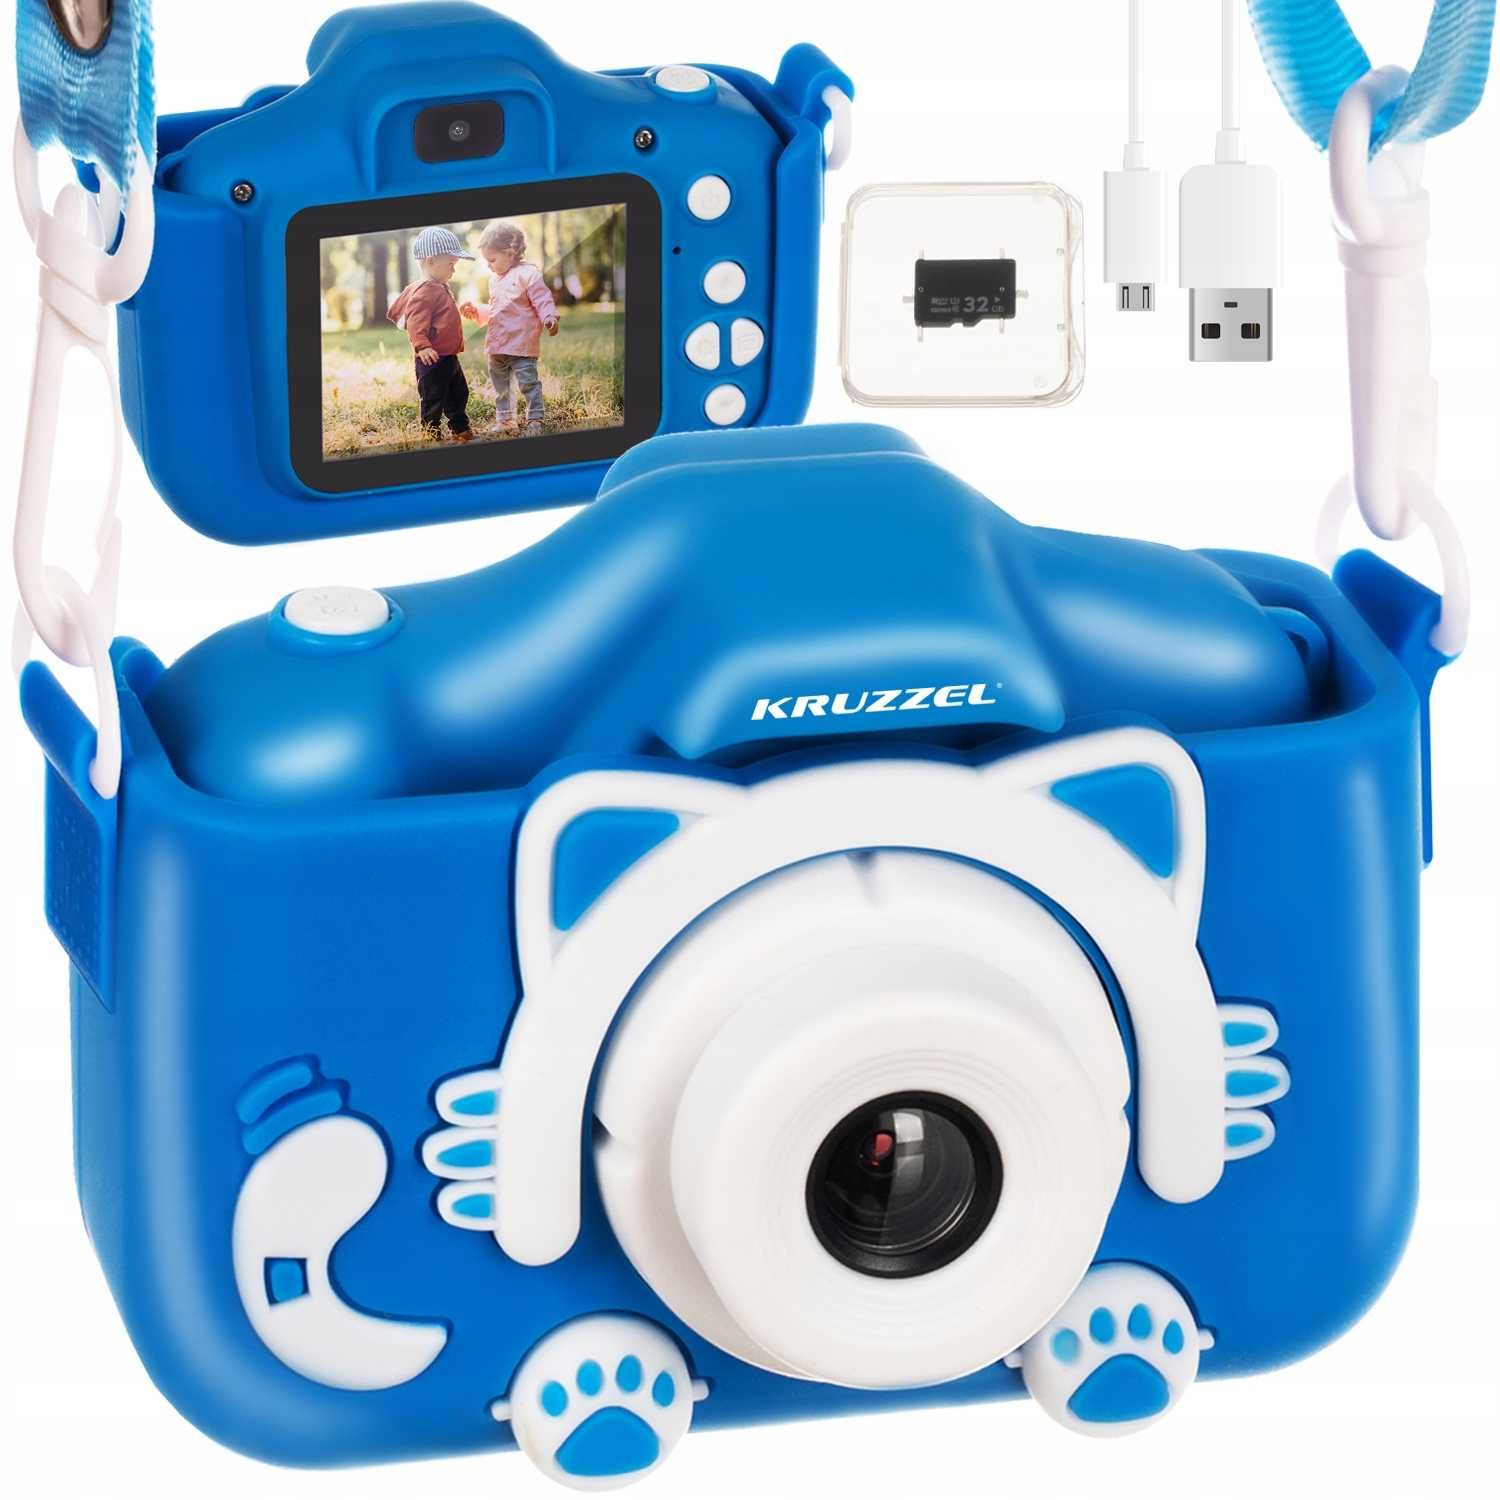 Aparat dla Dzieci Cyfrowy Kamera Fotograficzny + Karta 32gb Full HD